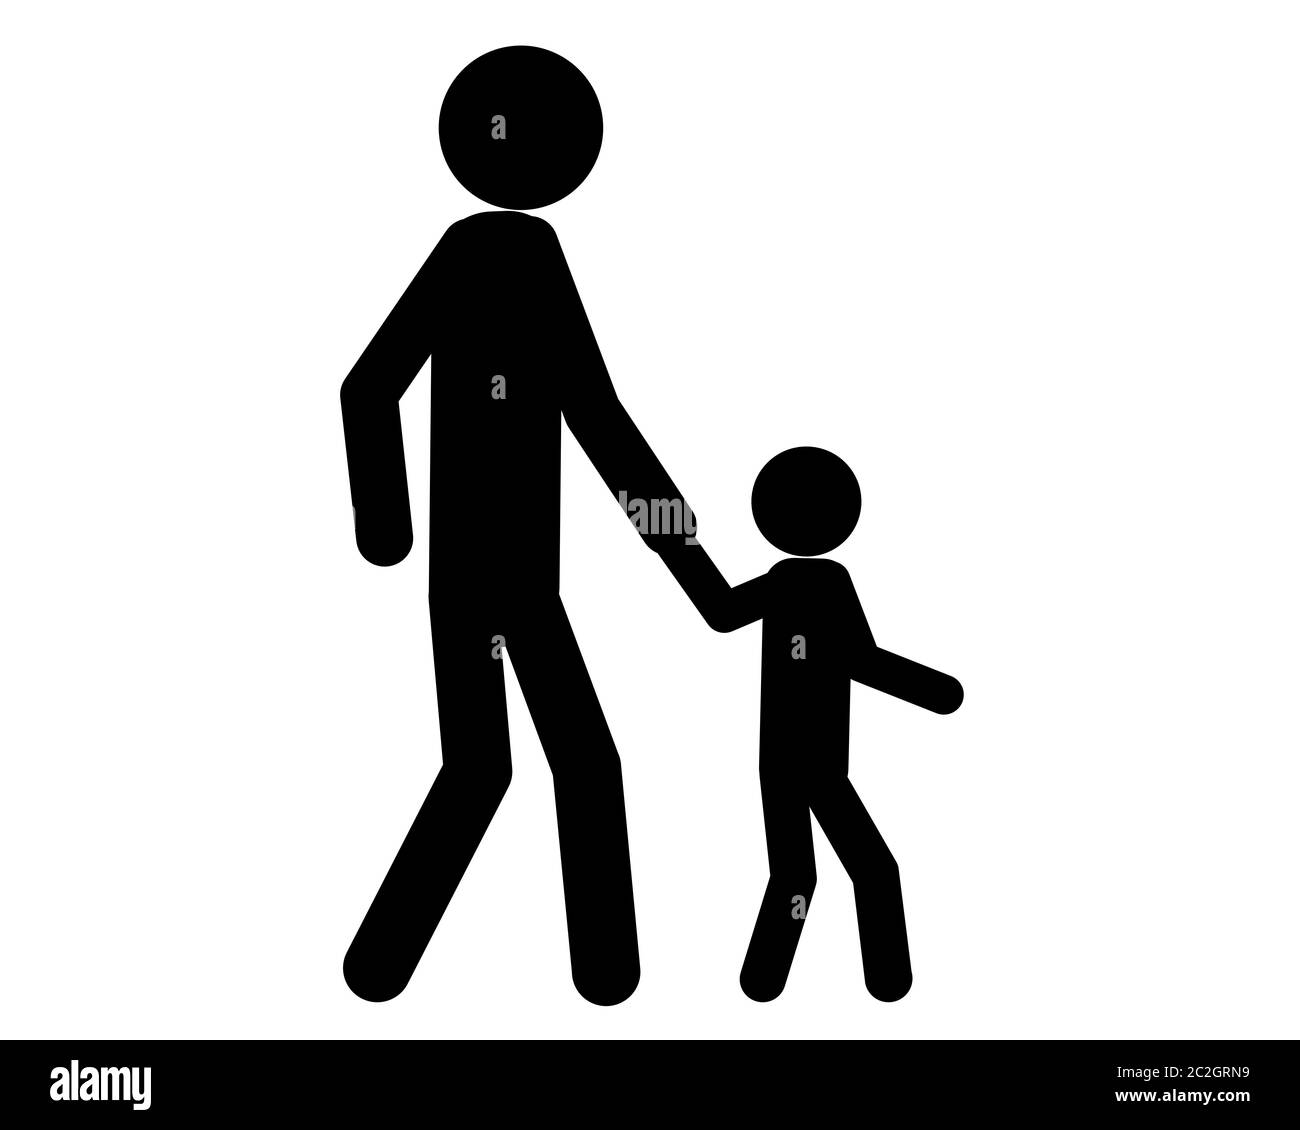 Mann und Kind beim spazieren gehen Hand in Hand Stock Photo